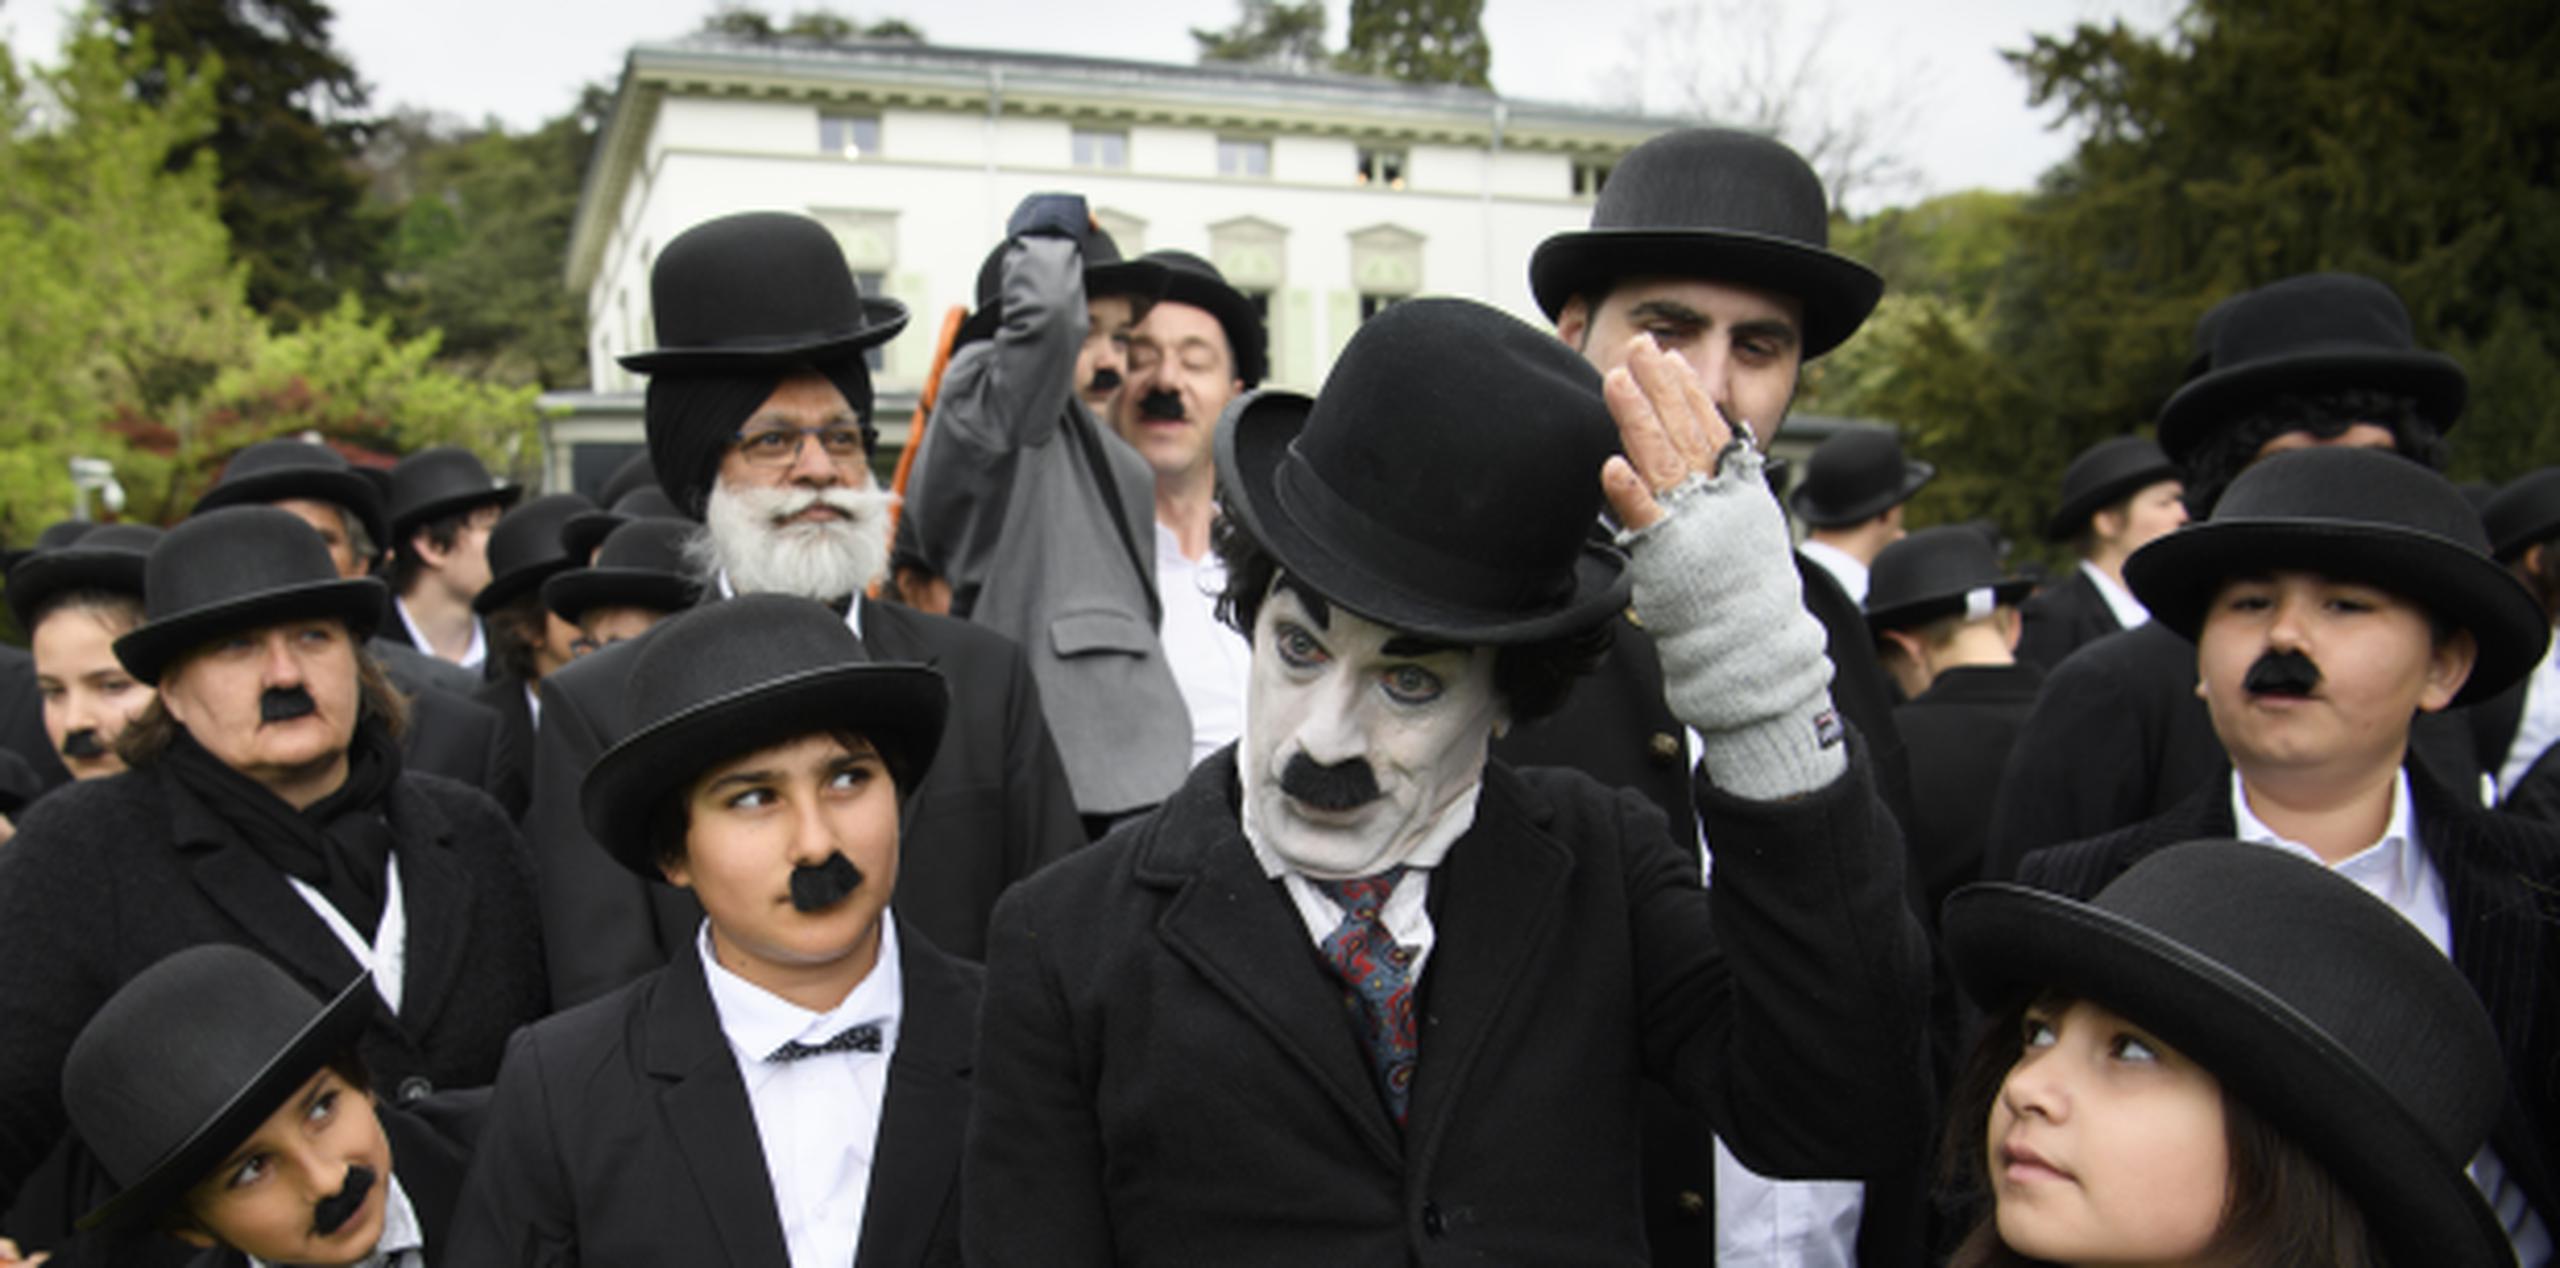 Unas 662 personas entre hombres, mujeres y niños visitaron disfrazados el otrora hogar de Chaplin, la Manoir de Ban, cerca del Lago Ginebra. (Archivo)